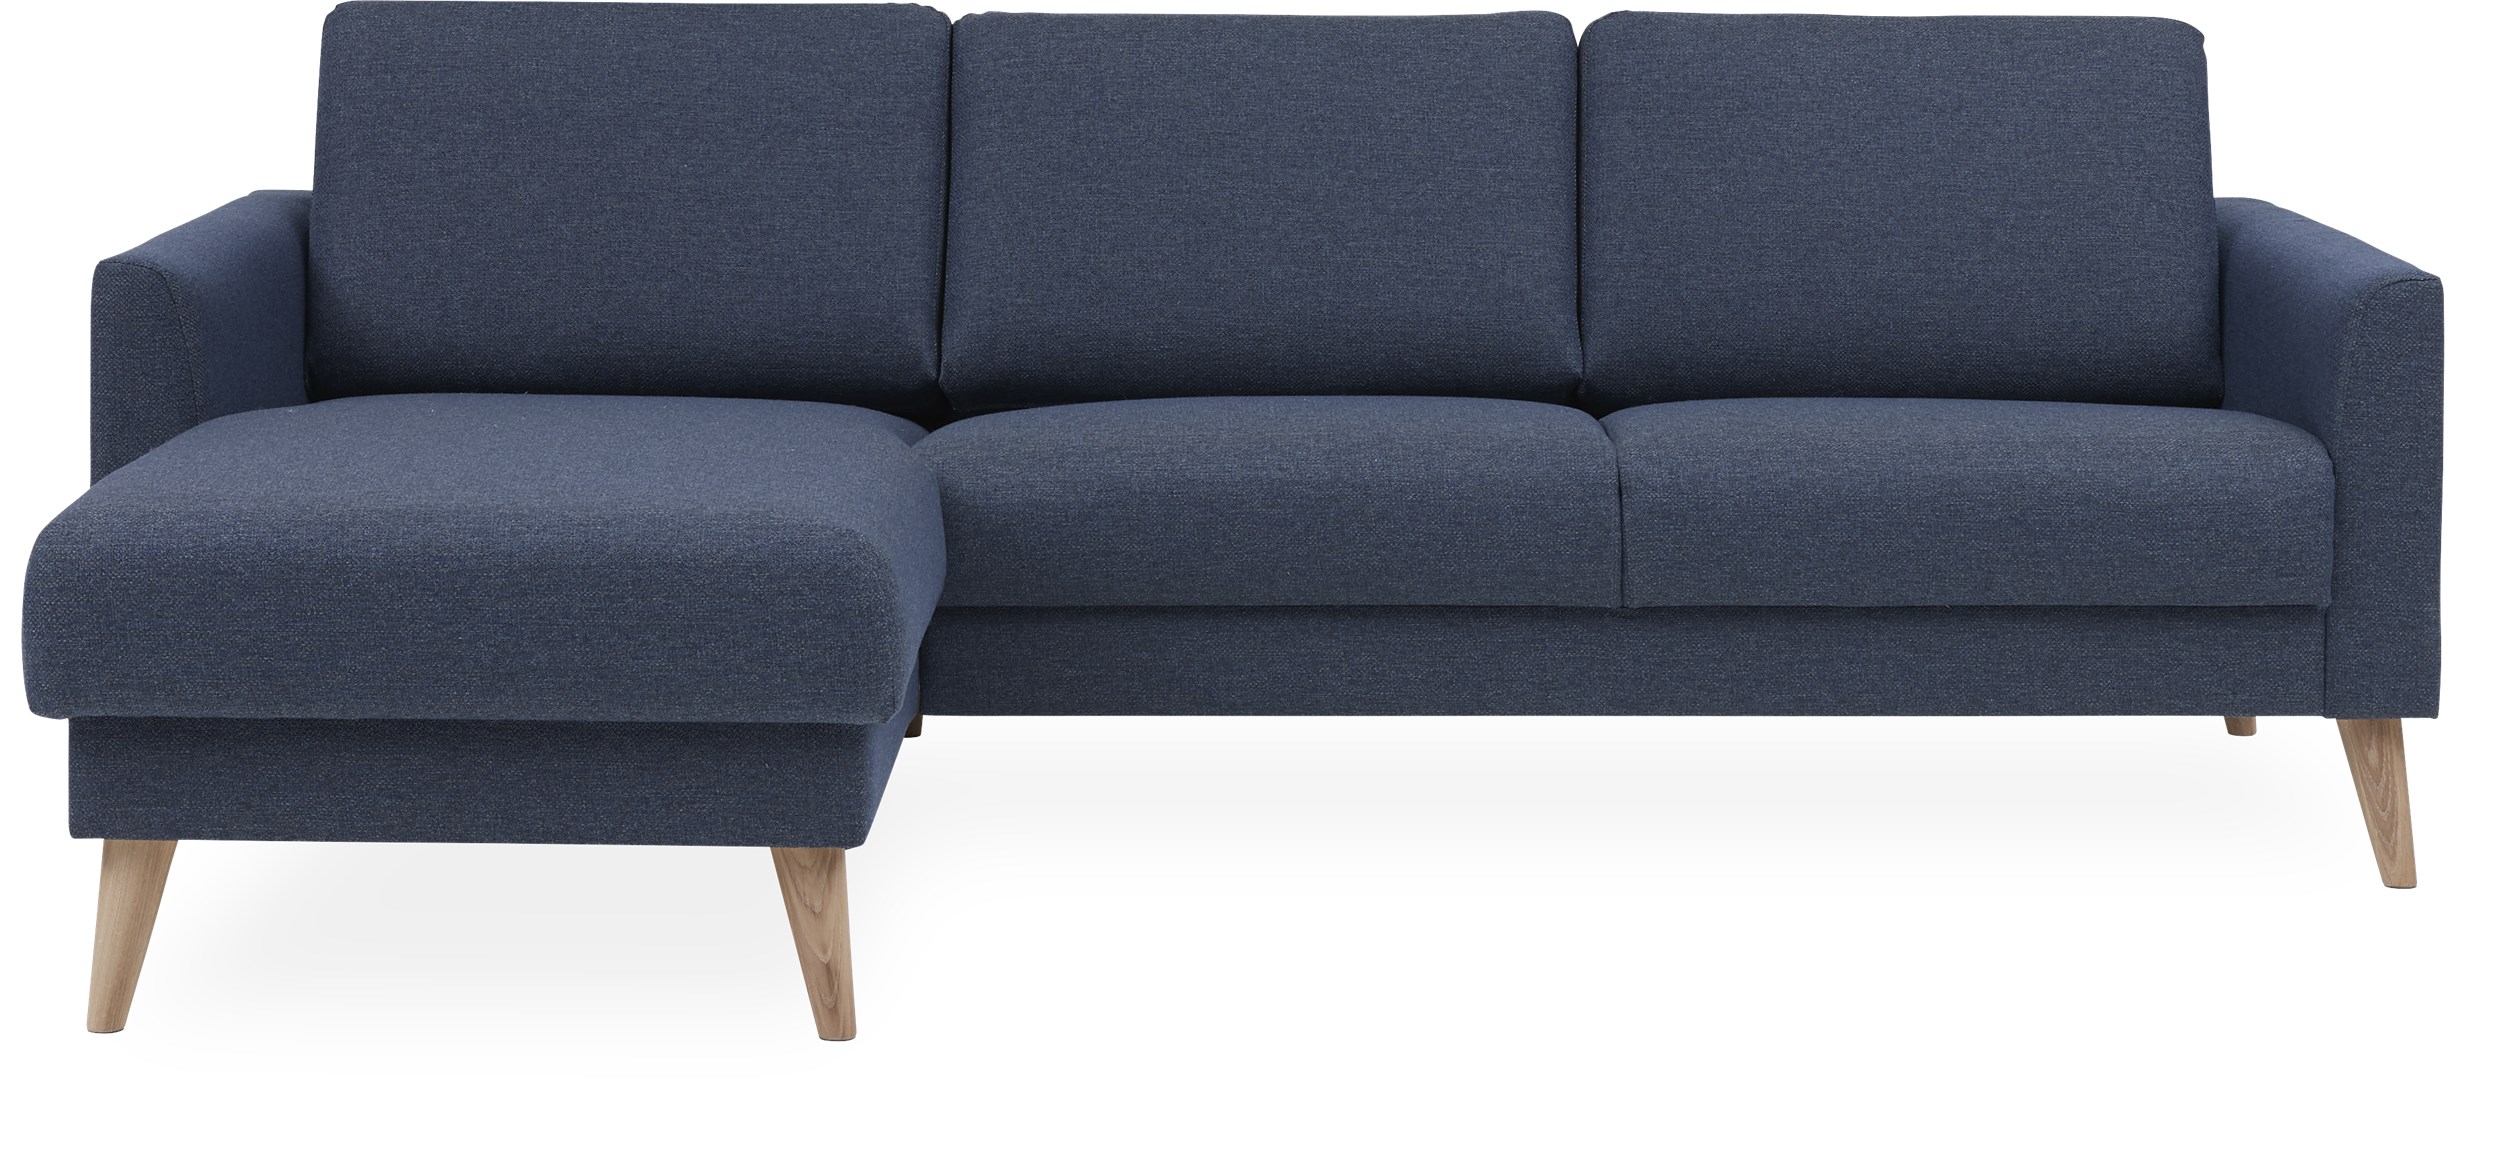 Lotus Sofa med chaiselong - Golf Blue stof og ben i hvidolieret eg